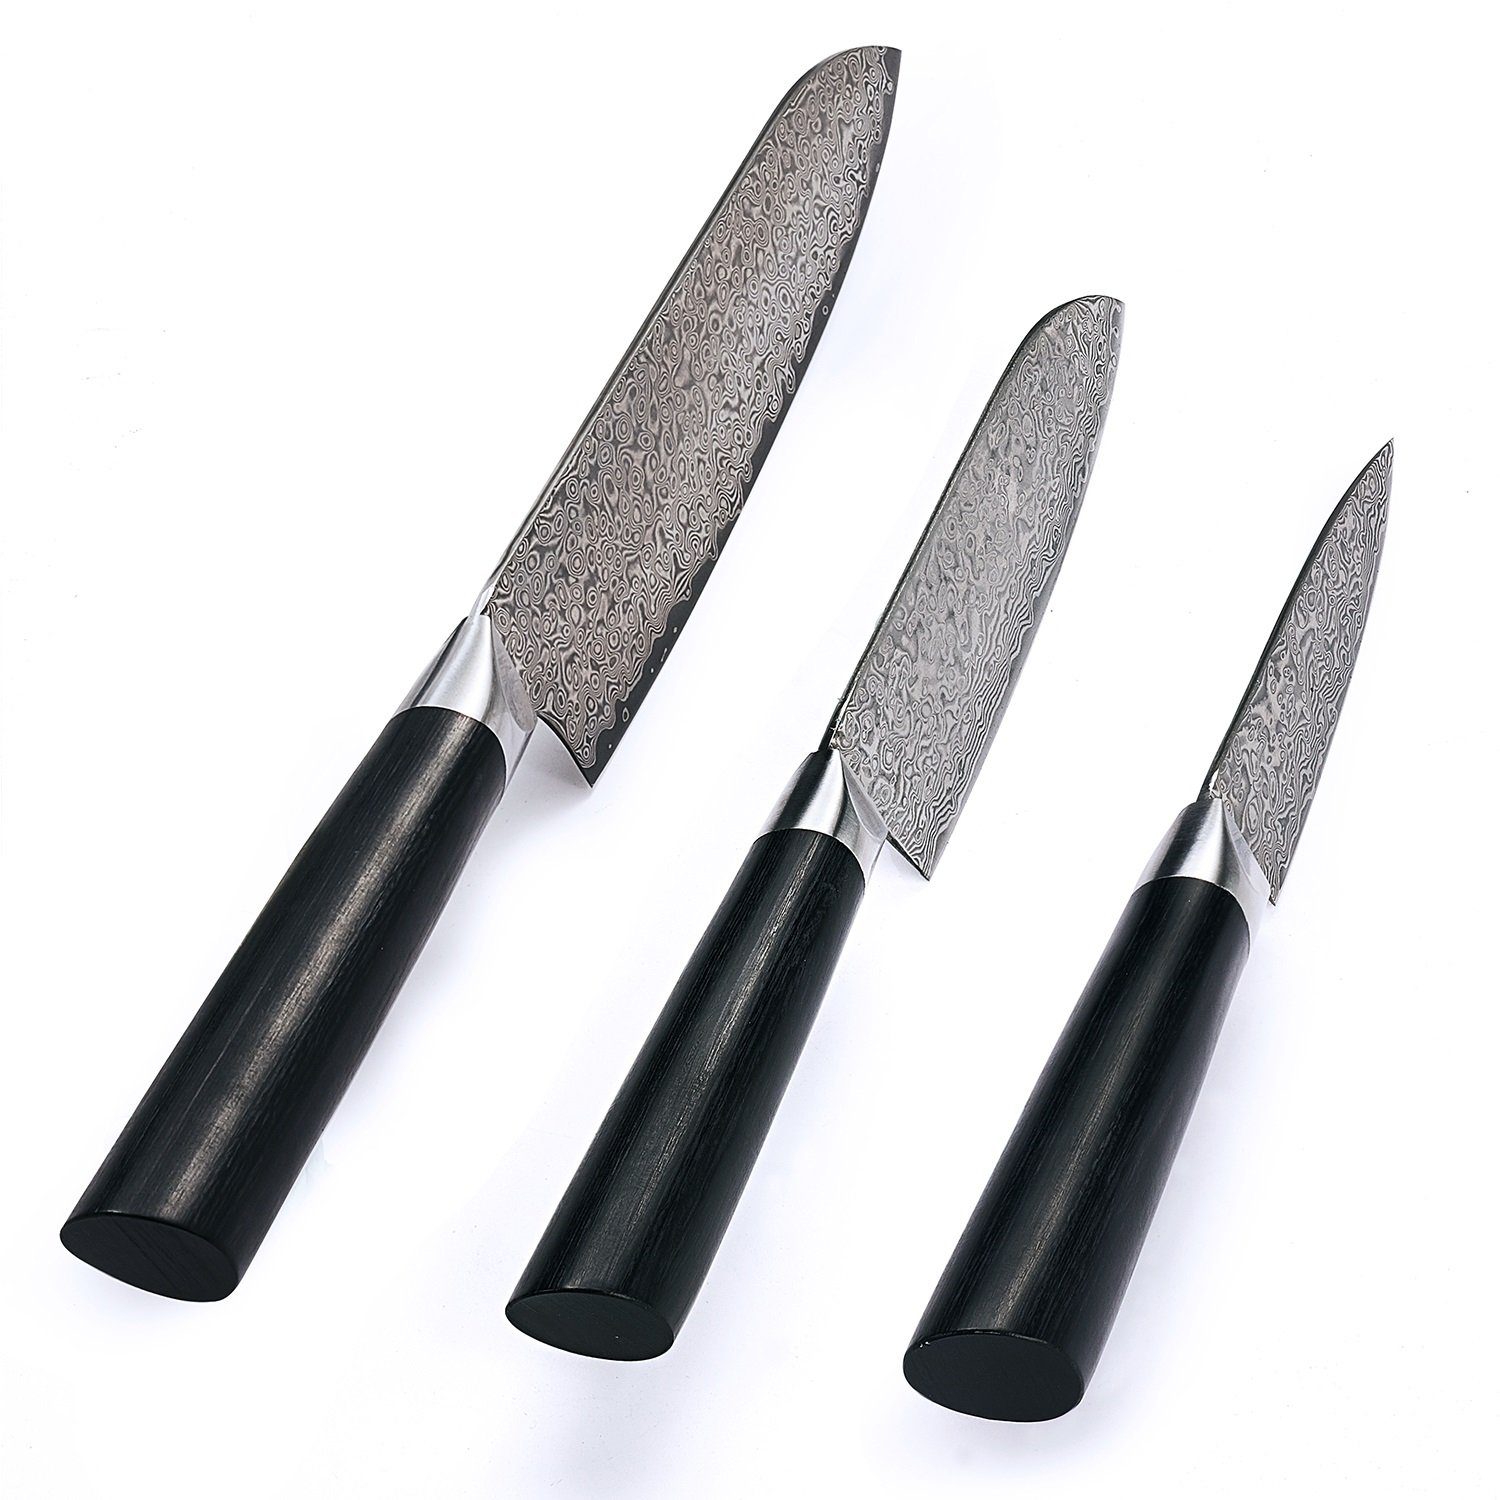 Klingen I Black Pakkah, I ZAYIKO dunkler Damaststahl 9-18cm Edition 3er Messer-Set Damast Messerset I dunkler